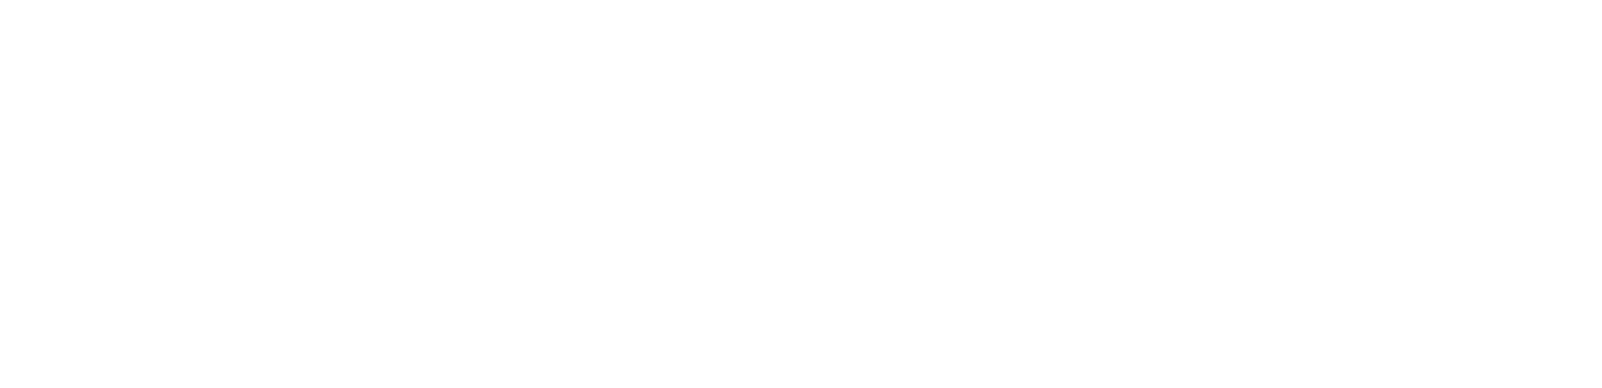 NIBE Industrier logo large for dark backgrounds (transparent PNG)